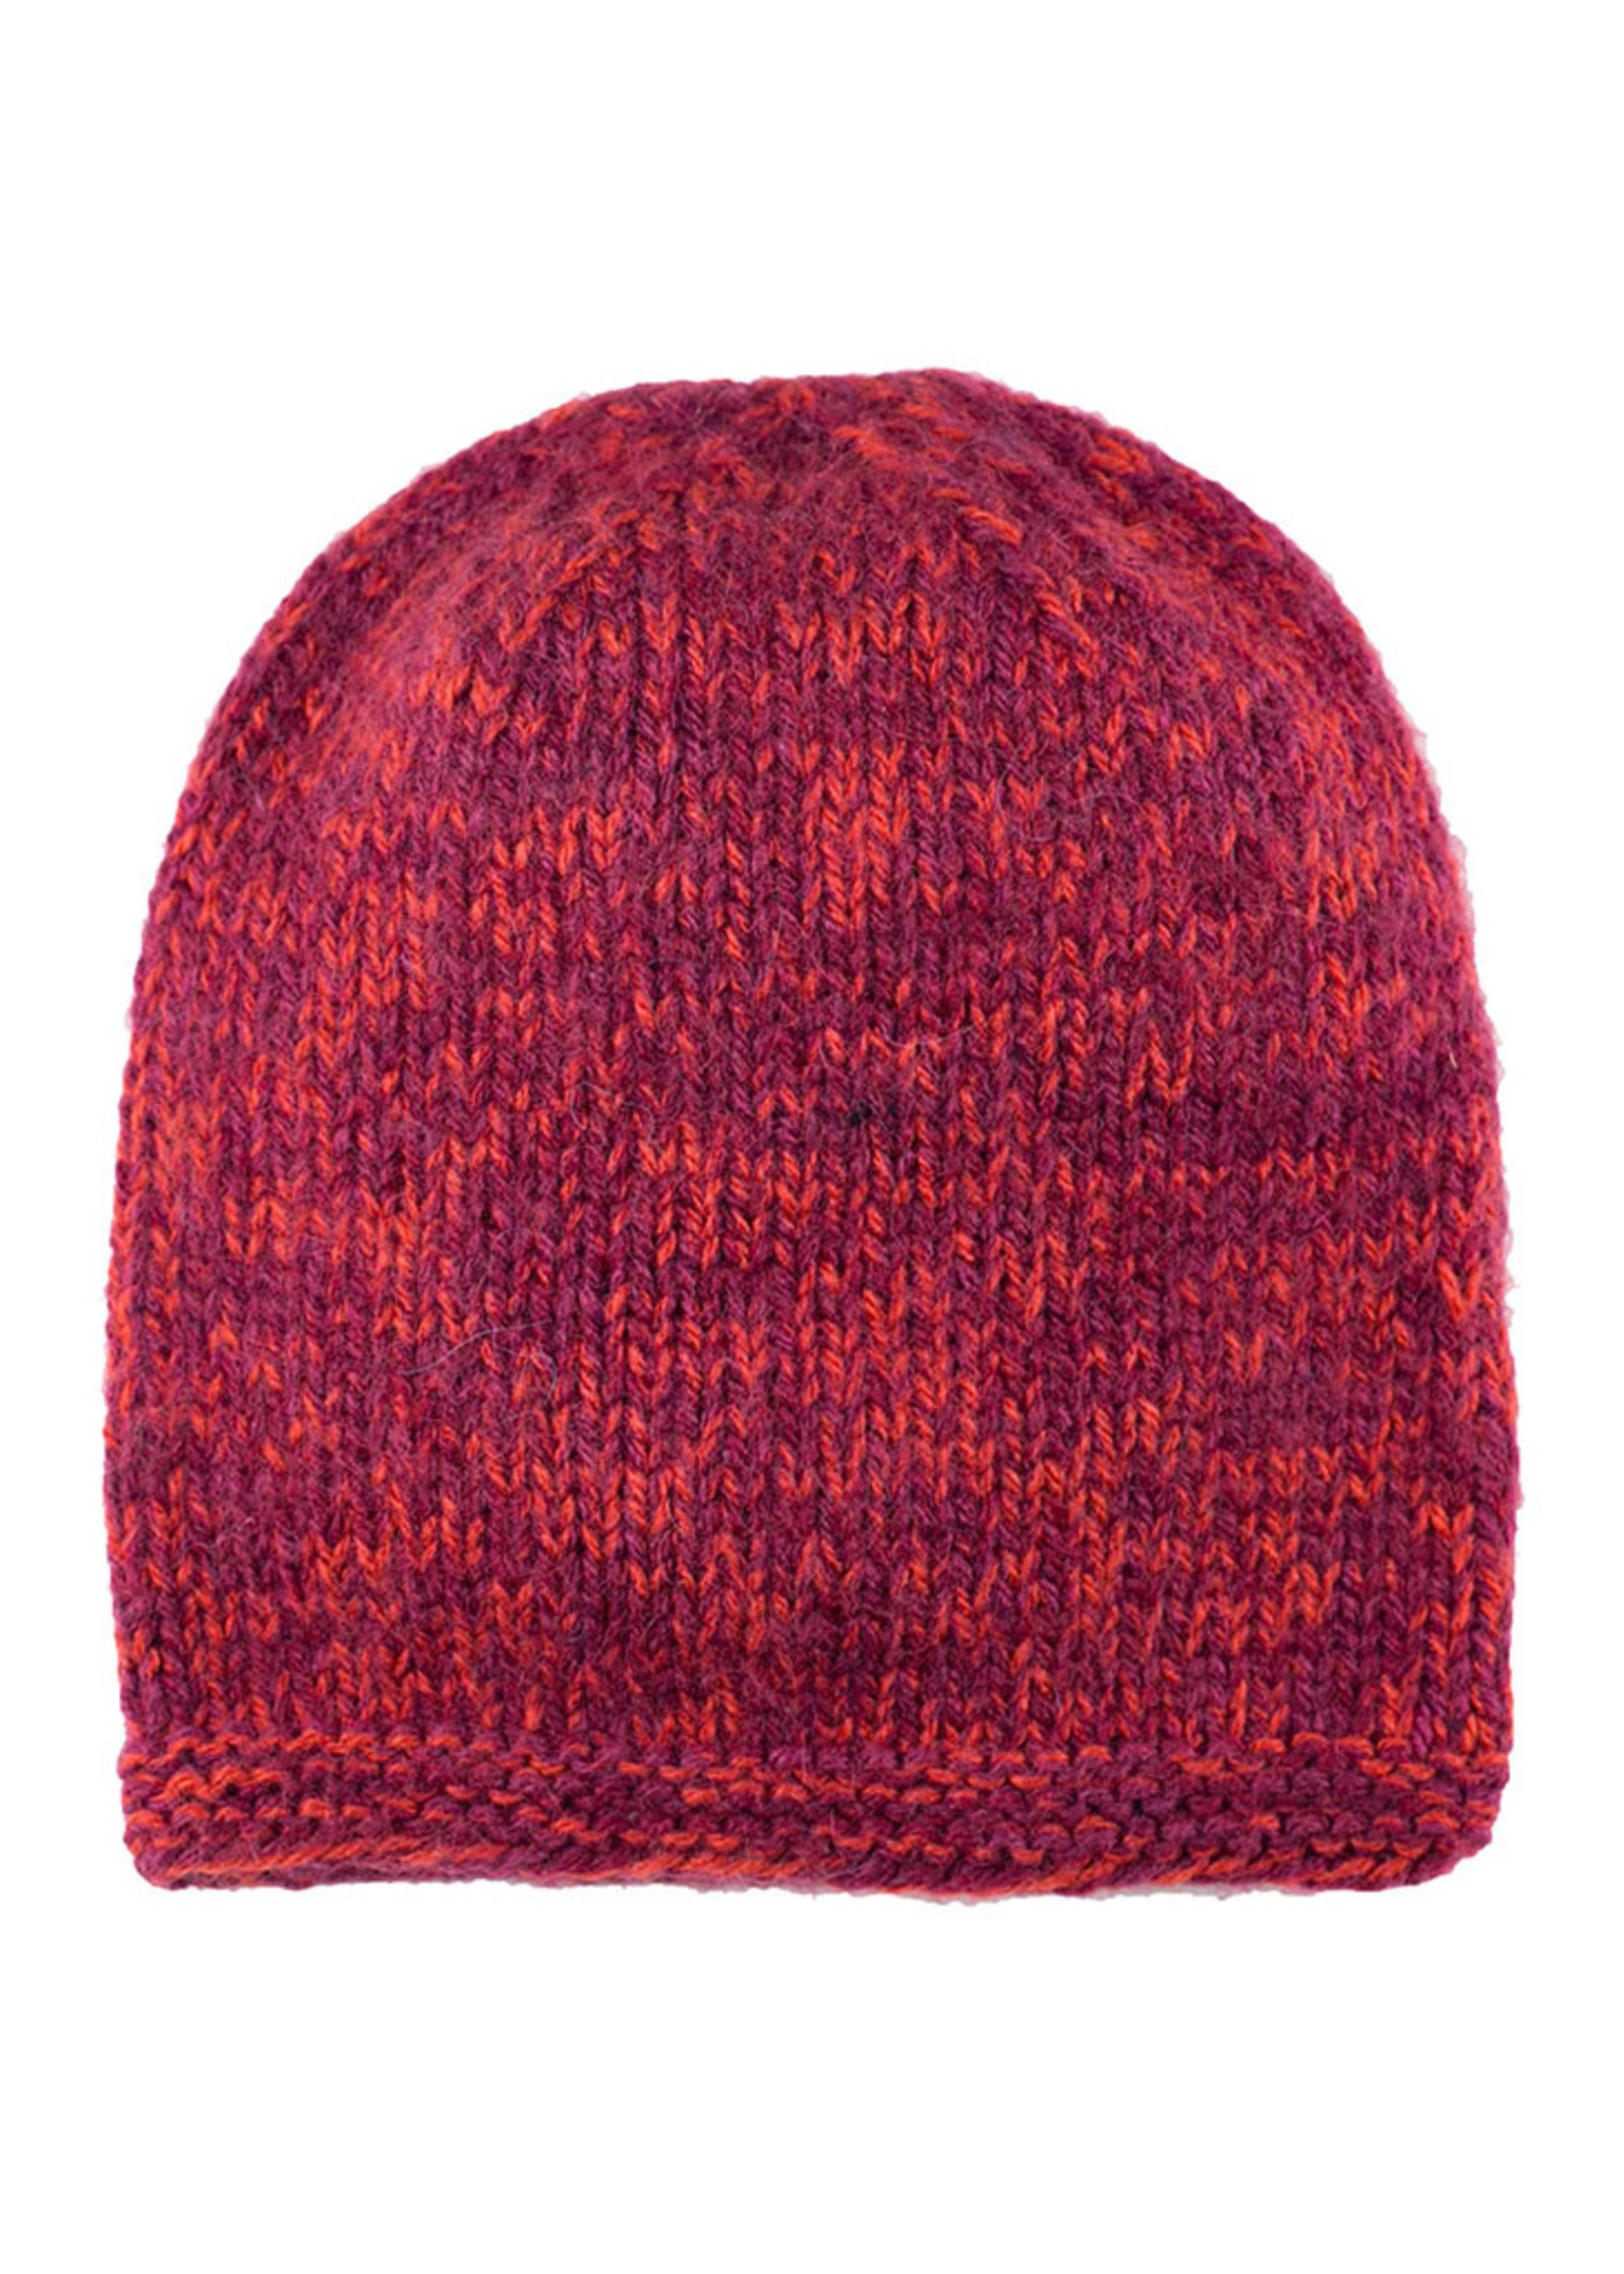 Blended Knit Hat